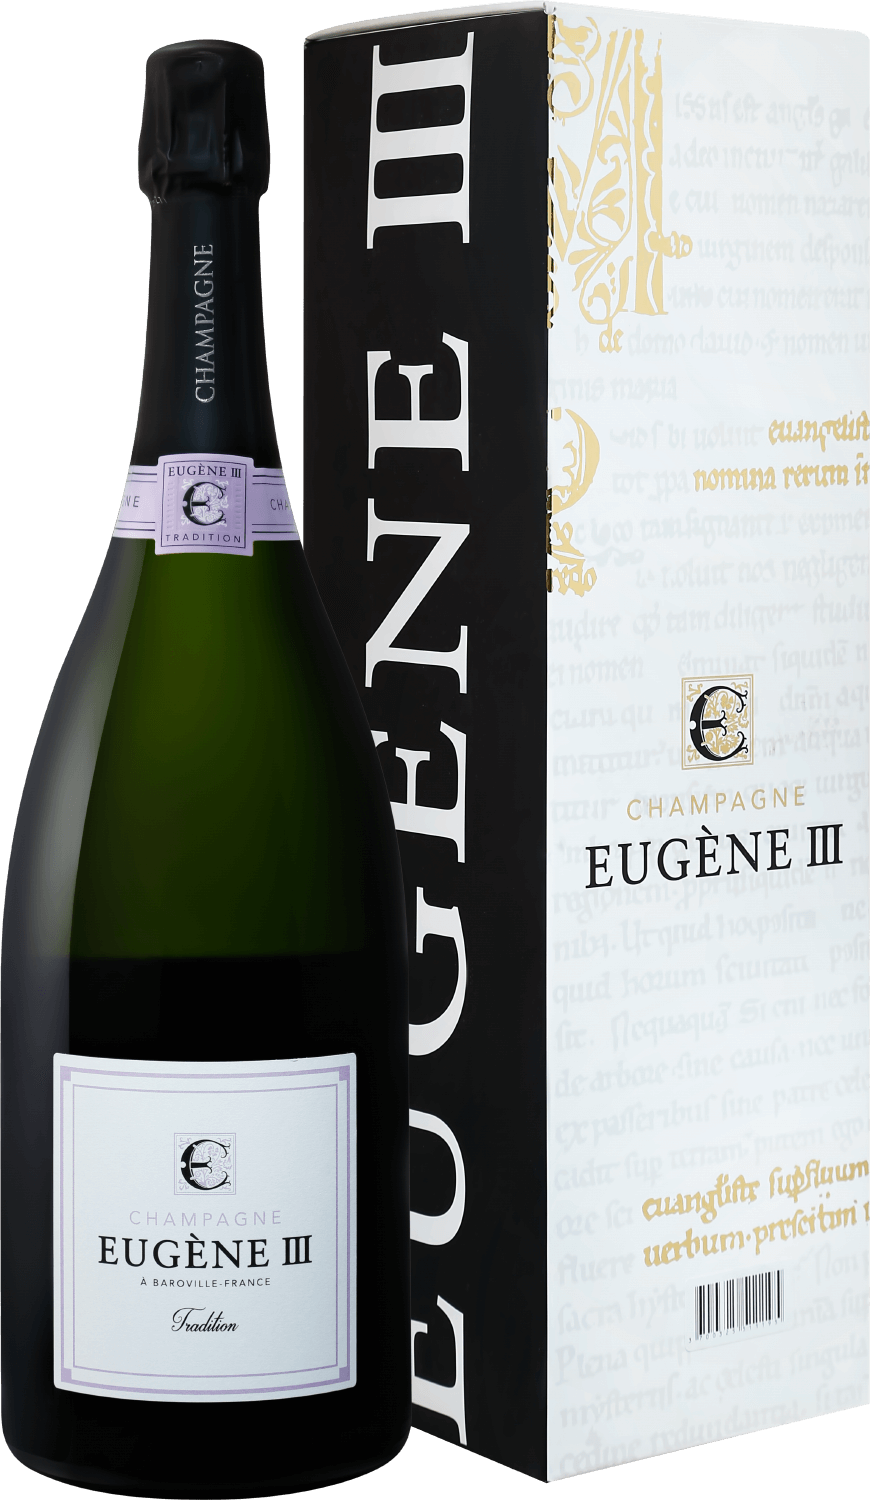 Eugene III Tradition Brut Champagne АOC Coopérative Vinicole de la Région de Baroville (gift box) barfontarc rosé de saignée champagne aoc coopérative vinicole de la région de baroville